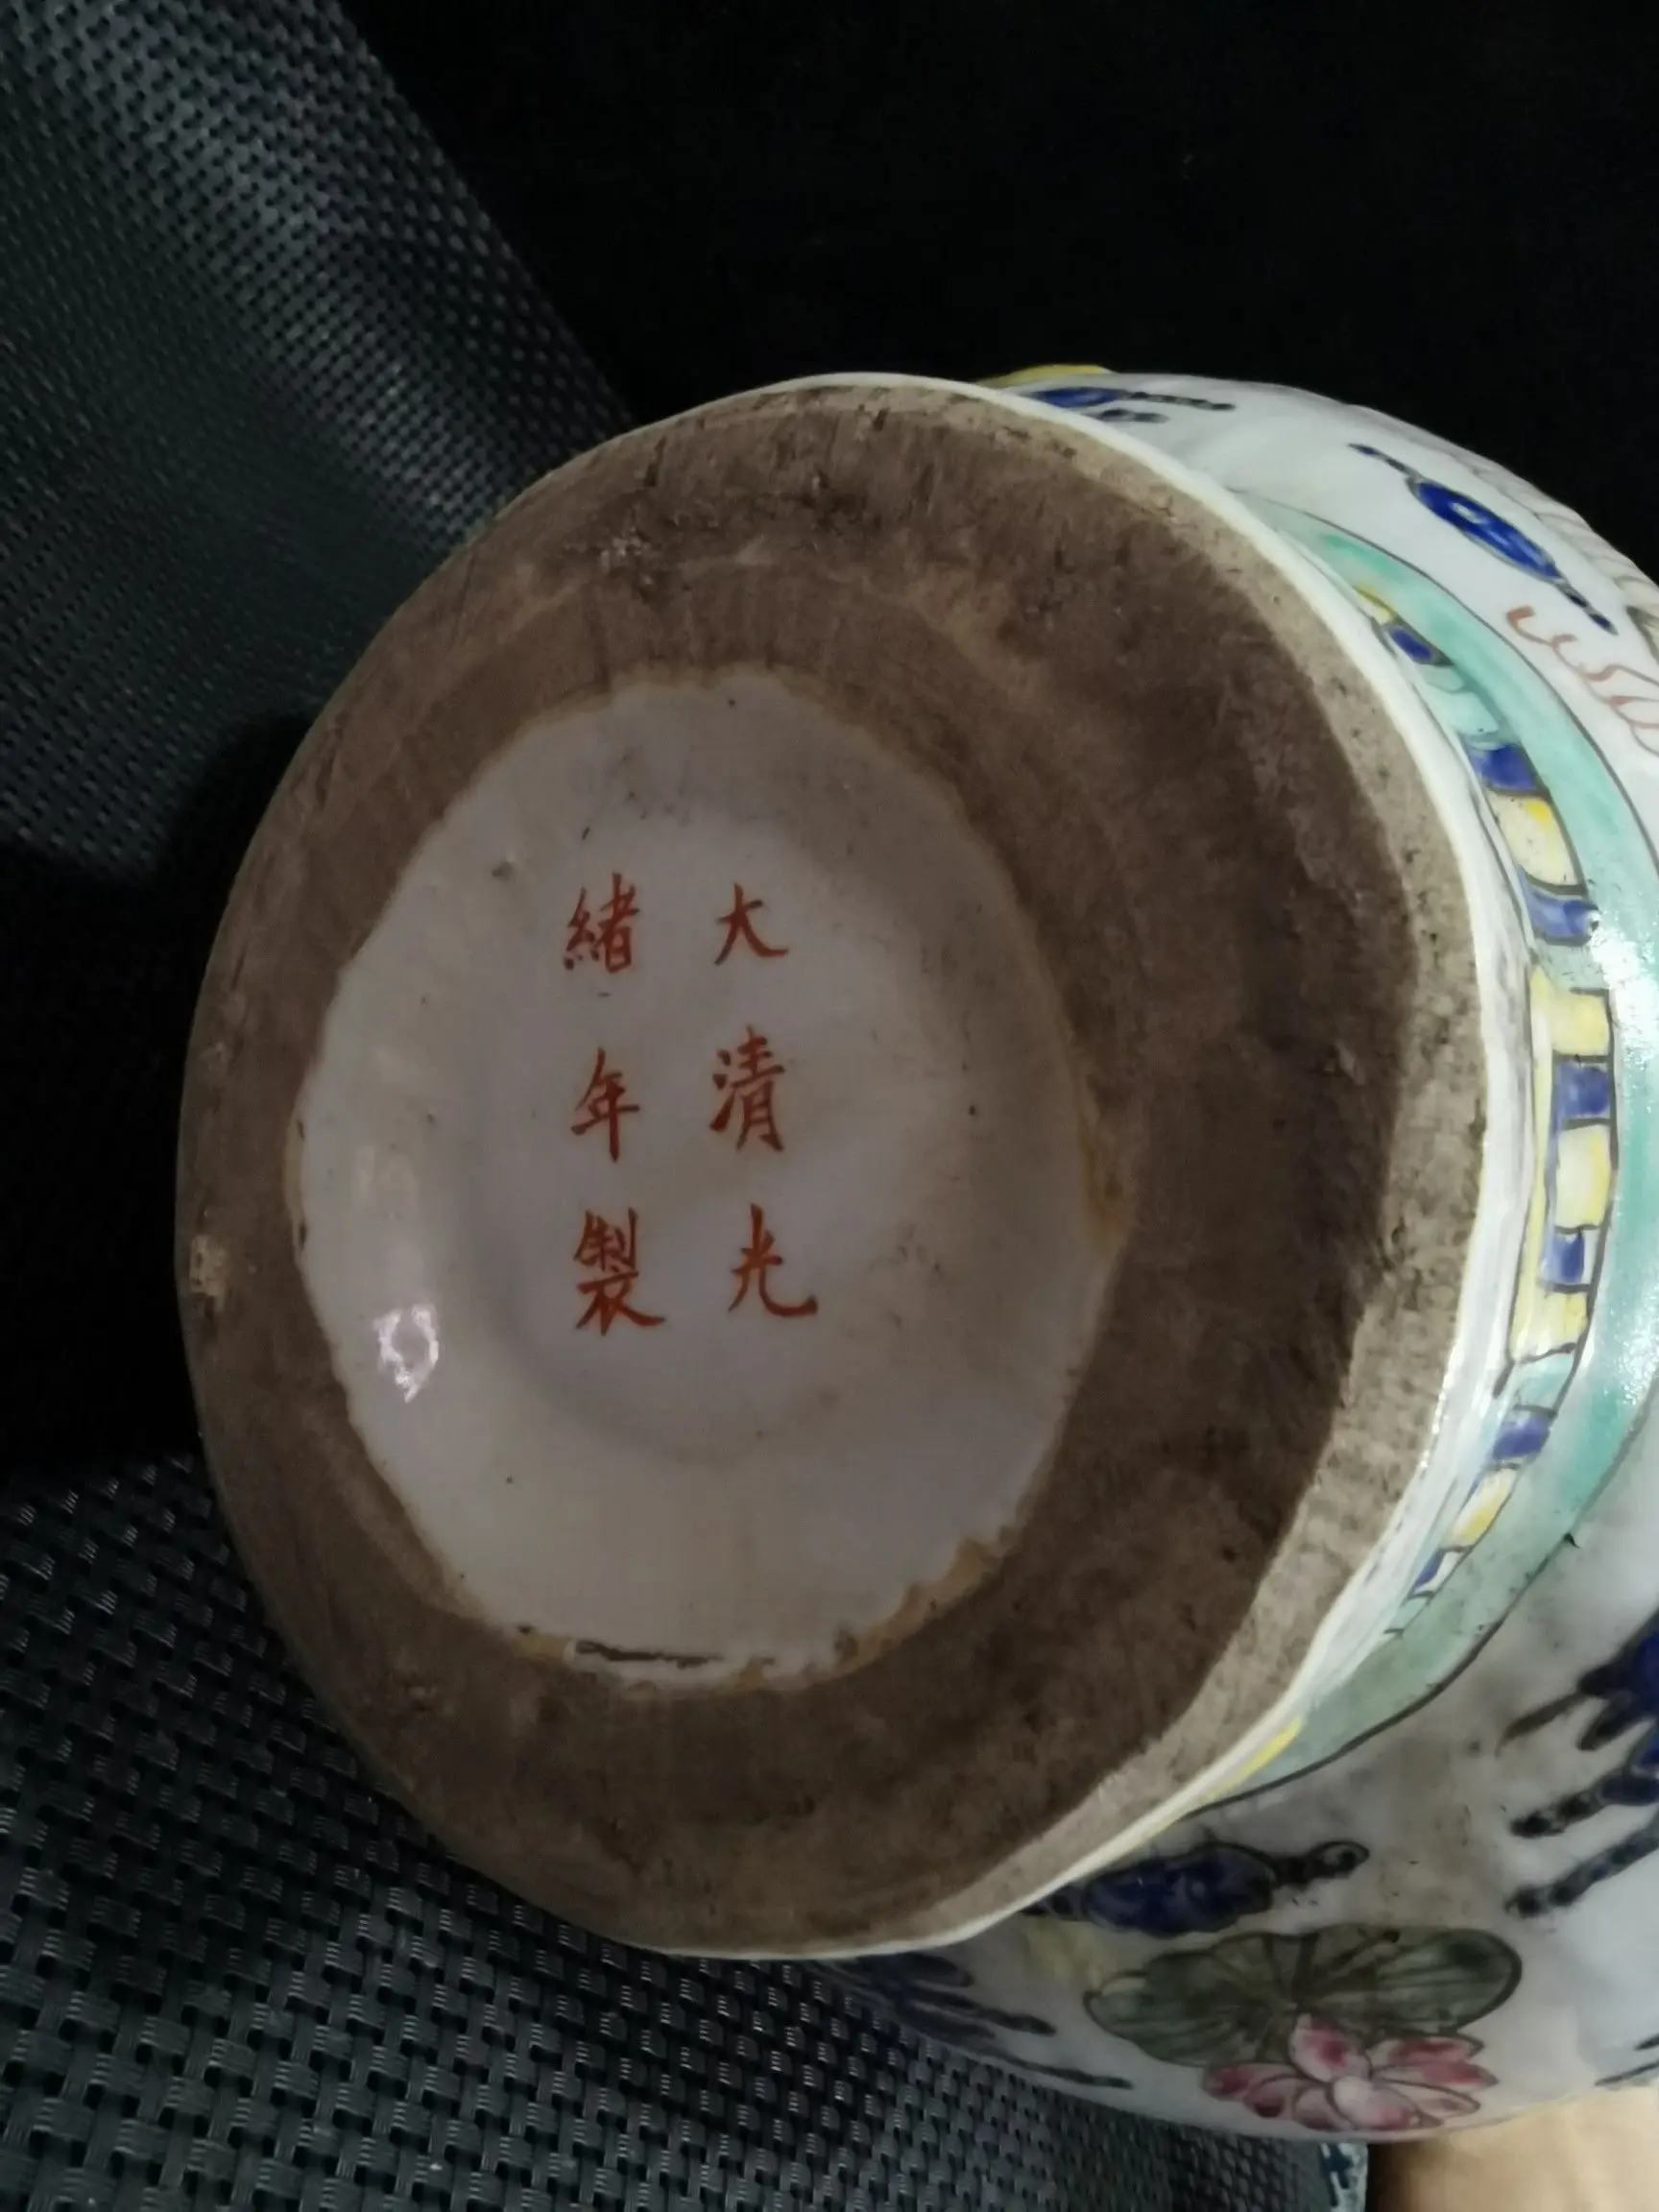 Редкий китайский античный керамический чайник, в хорошем состоянии, с знаком династии Цин